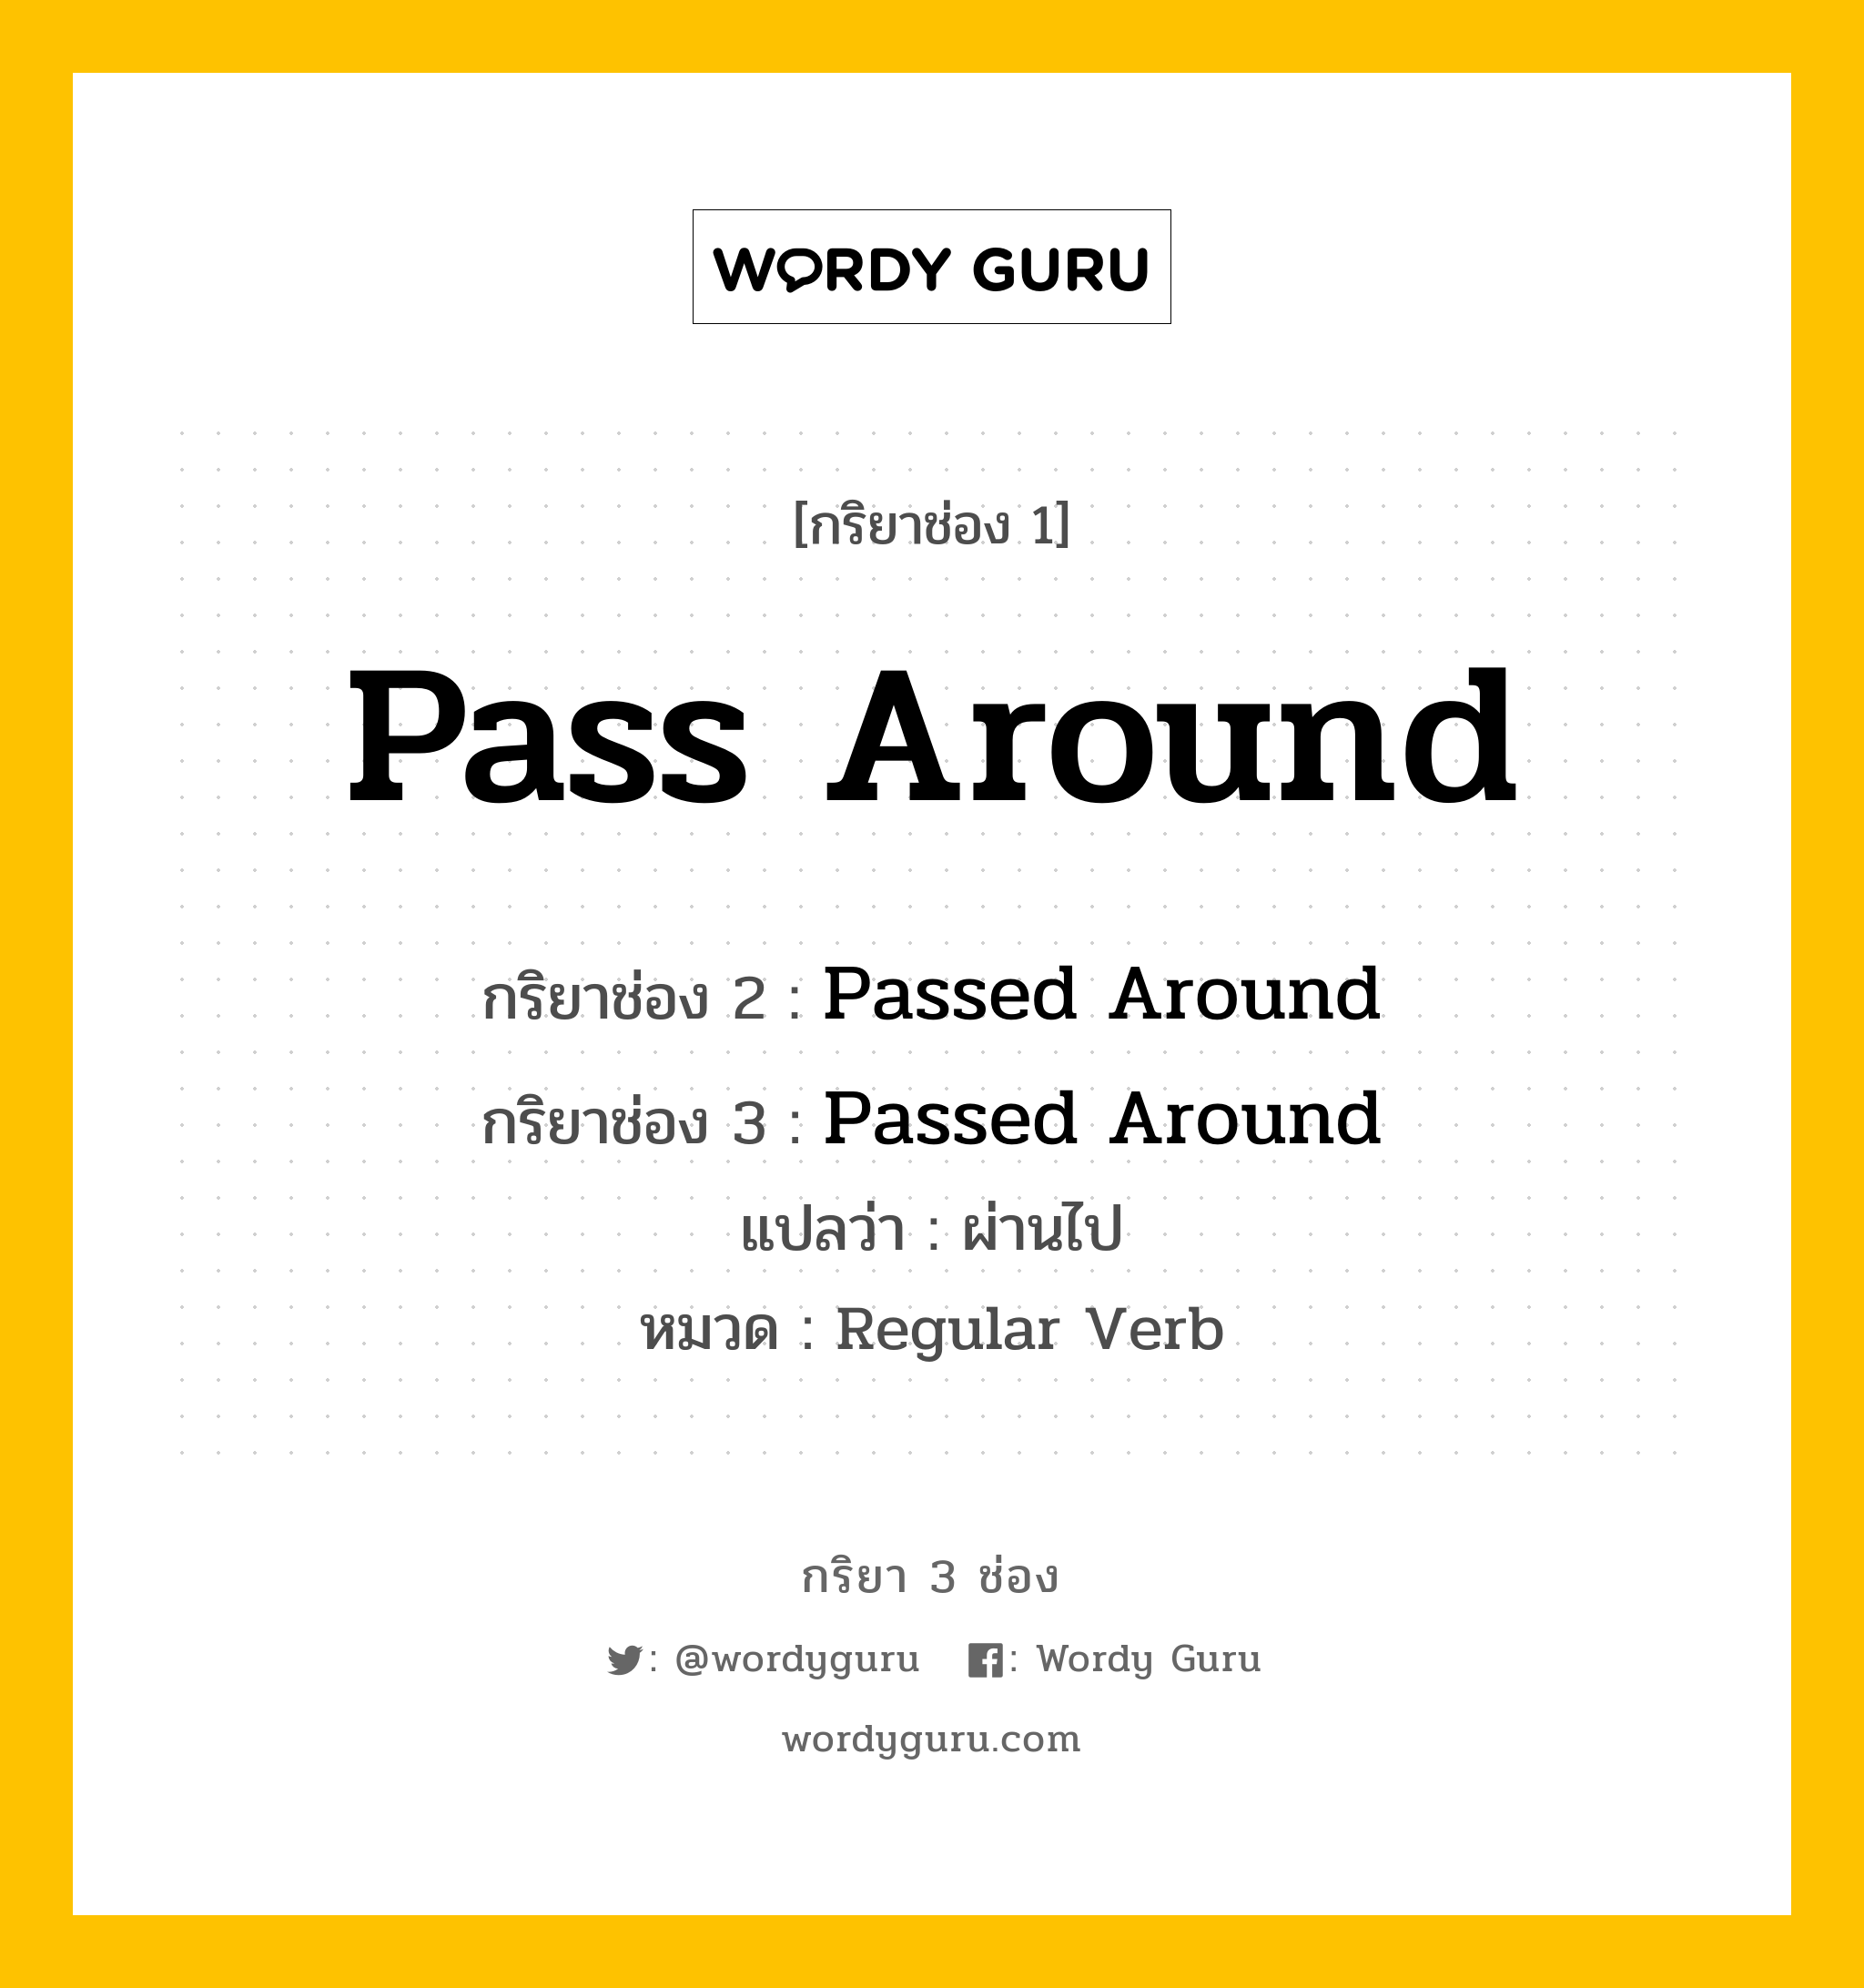 กริยา 3 ช่อง ของ Pass Around คืออะไร?, กริยาช่อง 1 Pass Around กริยาช่อง 2 Passed Around กริยาช่อง 3 Passed Around แปลว่า ผ่านไป หมวด Regular Verb หมวด Regular Verb